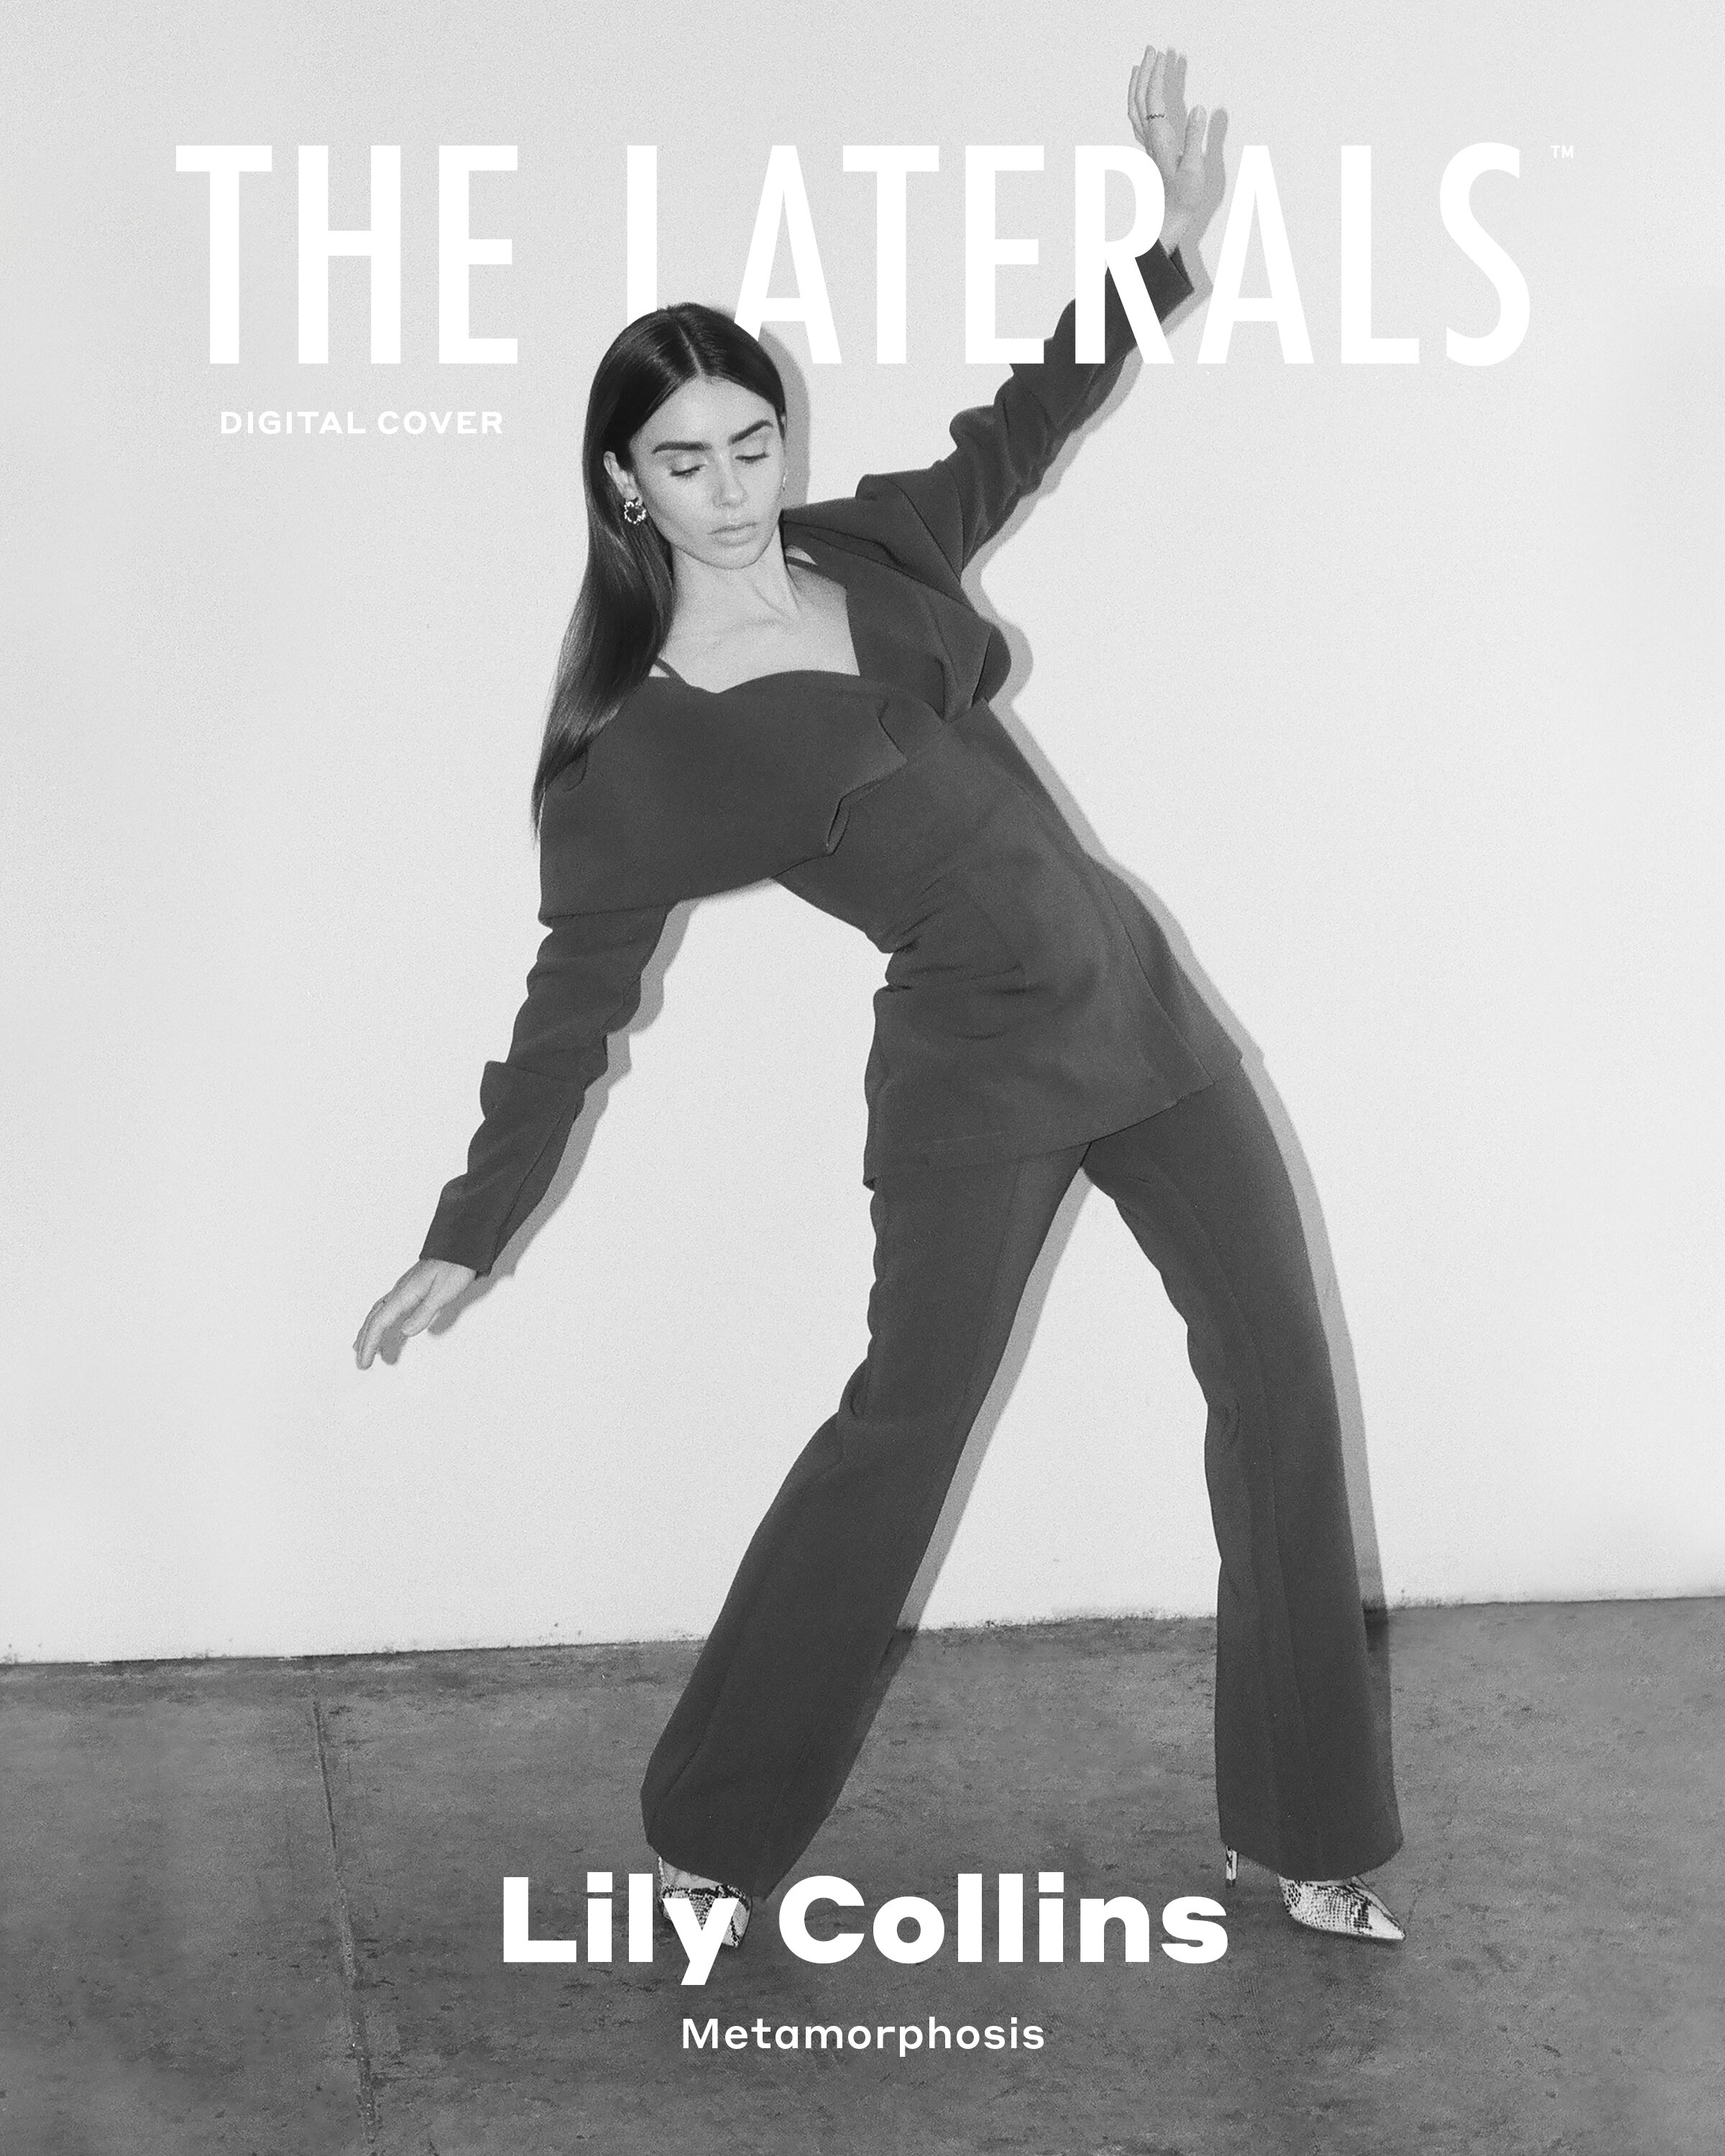 Fotos n°15 : Lily Collins la chica de la portada!